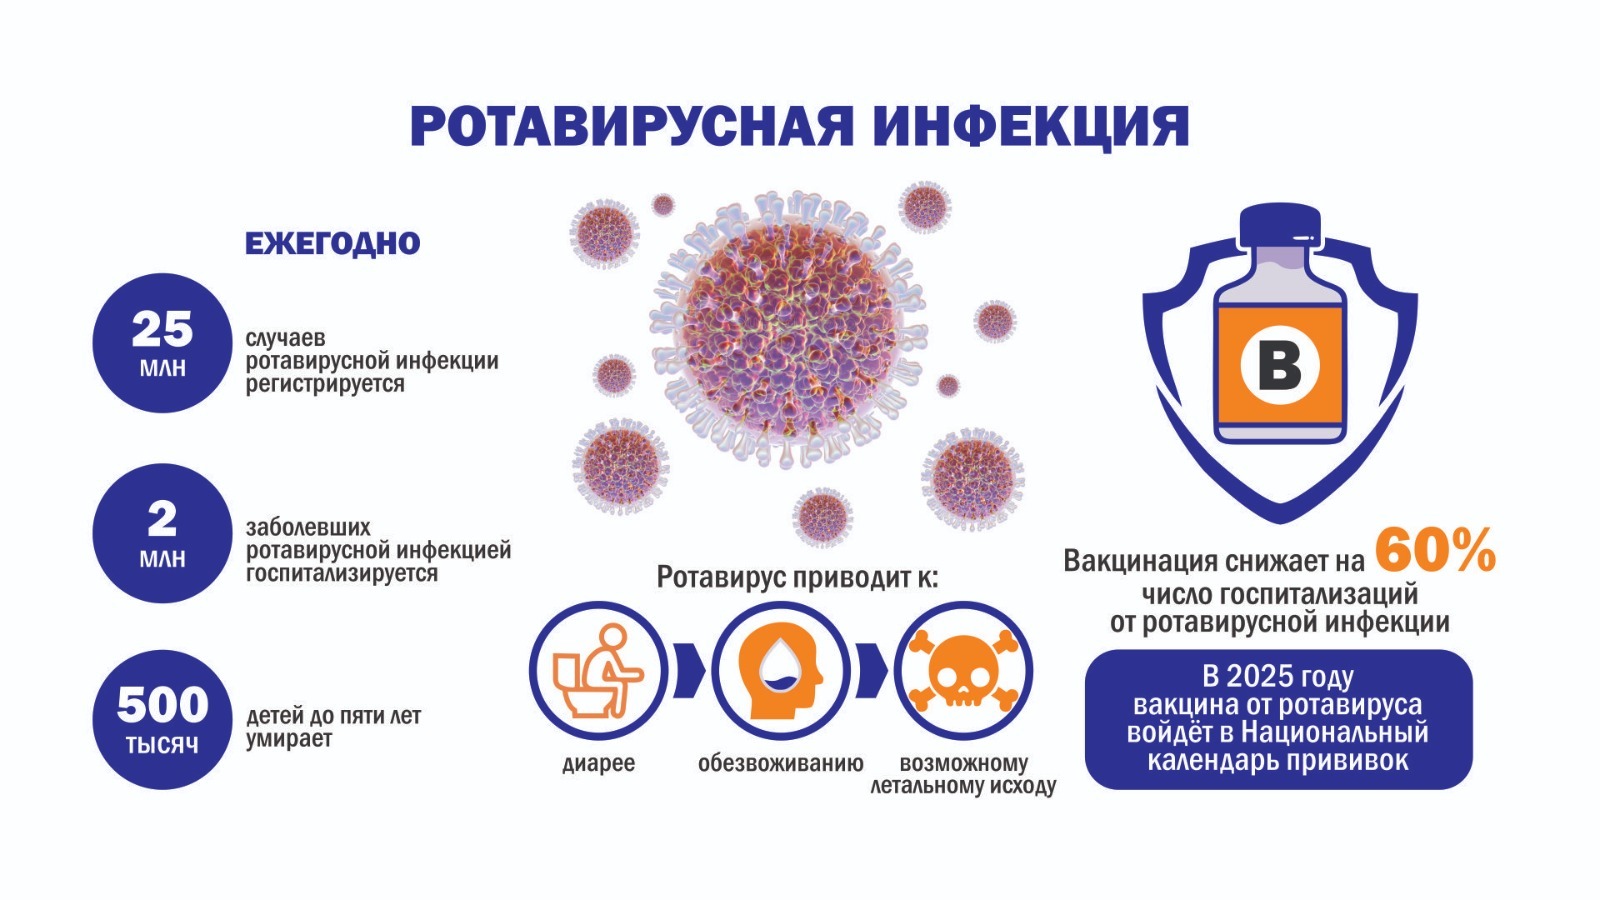 Бетувакс-КоВ-2 – вирусоподобная вакцина от коронавируса SARS-CoV-2